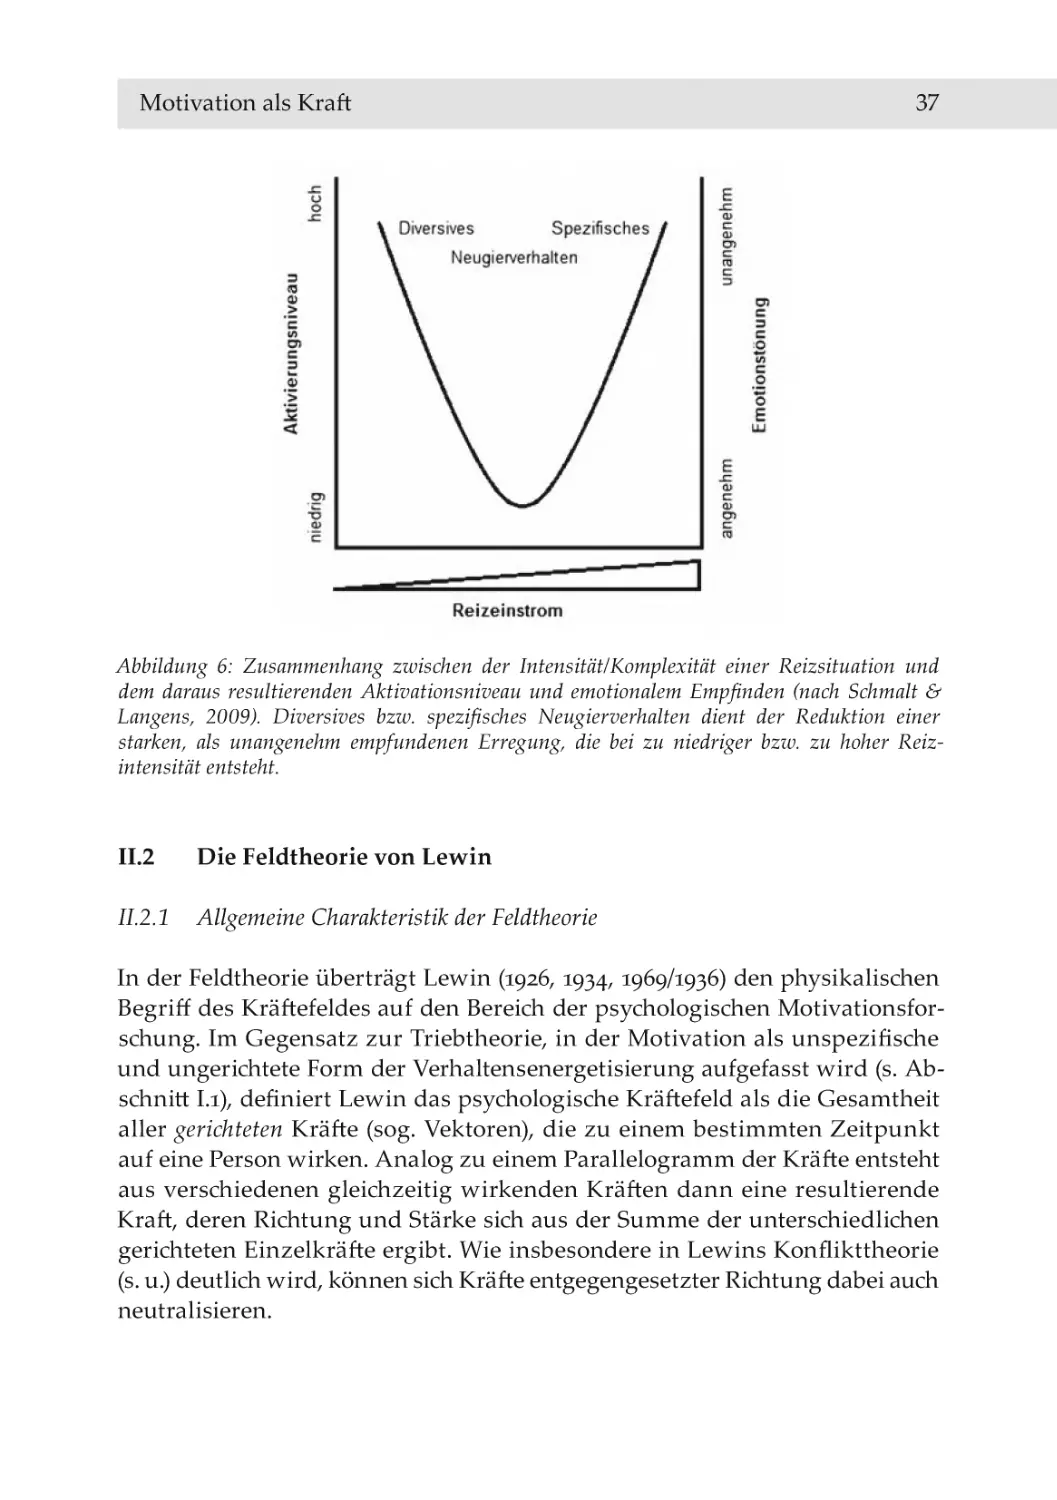 II.2 Die Feldtheorie von Lewin
II.2.1 Allgemeine Charakteristik der Feldtheorie